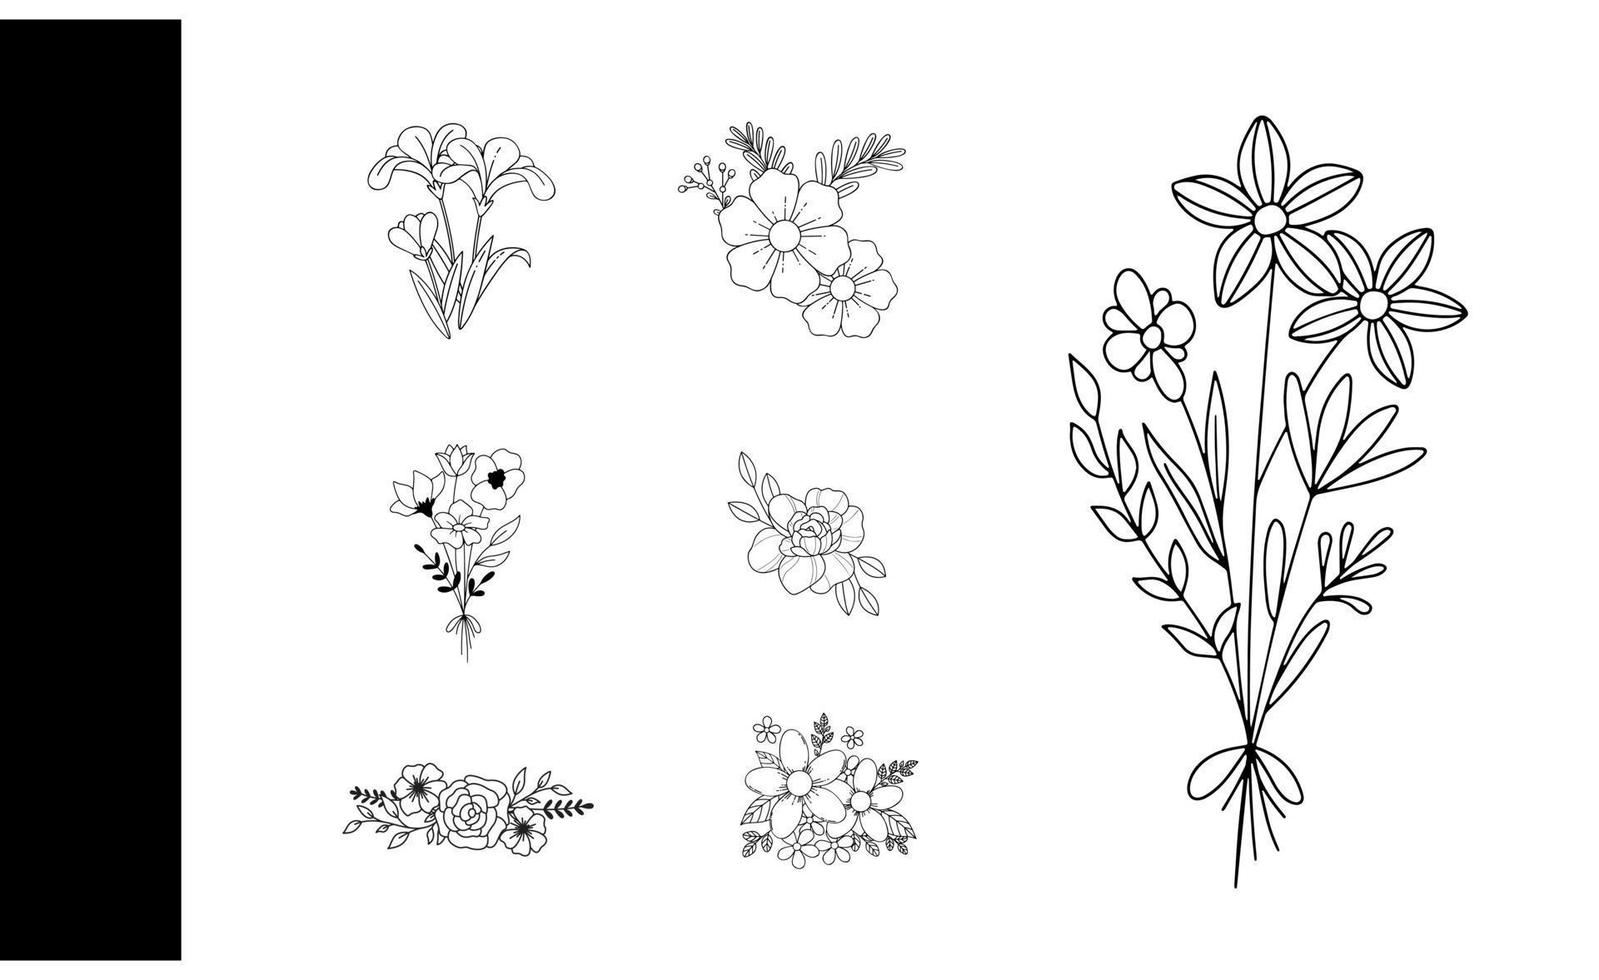 wild und wunderlich botanisch Skizzen ein vielseitig einstellen von handgemalt Elemente zum kreativ Designs und Dekorationen vektor